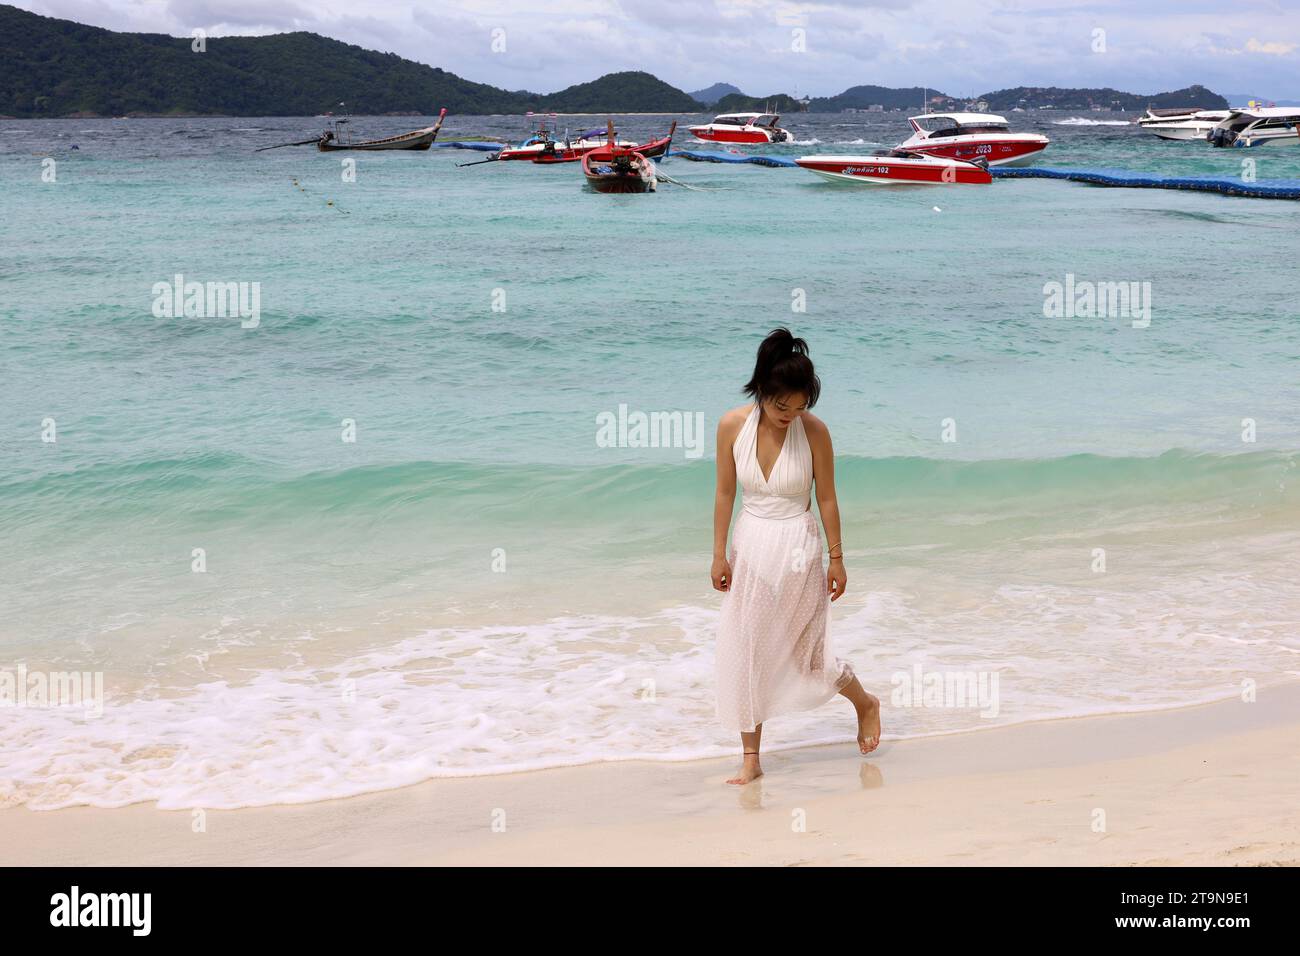 Asiatisches Mädchen in weißem Kleid, das am Sand auf tropischem Strand auf Motorboothintergrund läuft. Urlaub auf Coral Island, Koh Hey Stockfoto